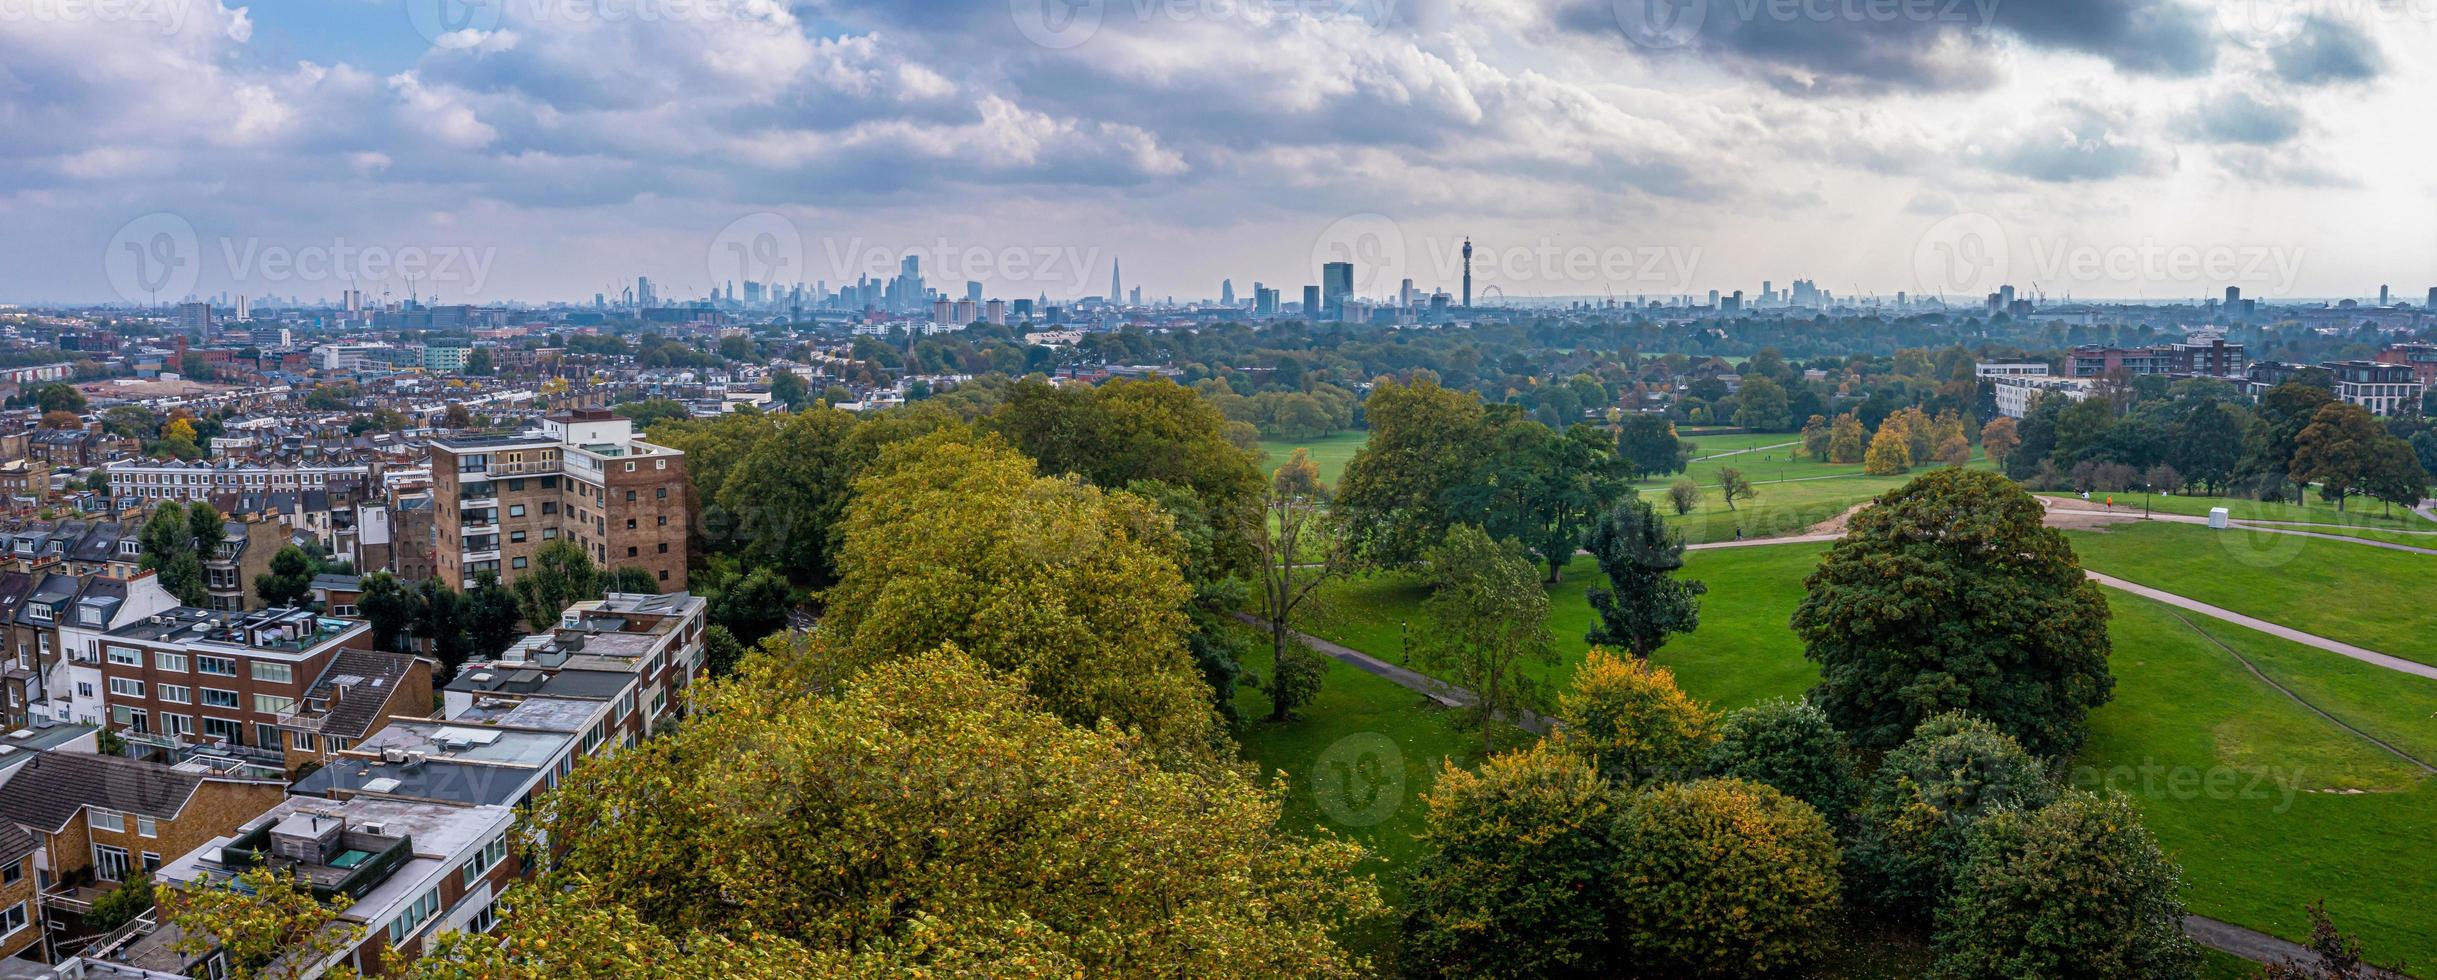 schöne luftaufnahme von london mit vielen grünen parks foto